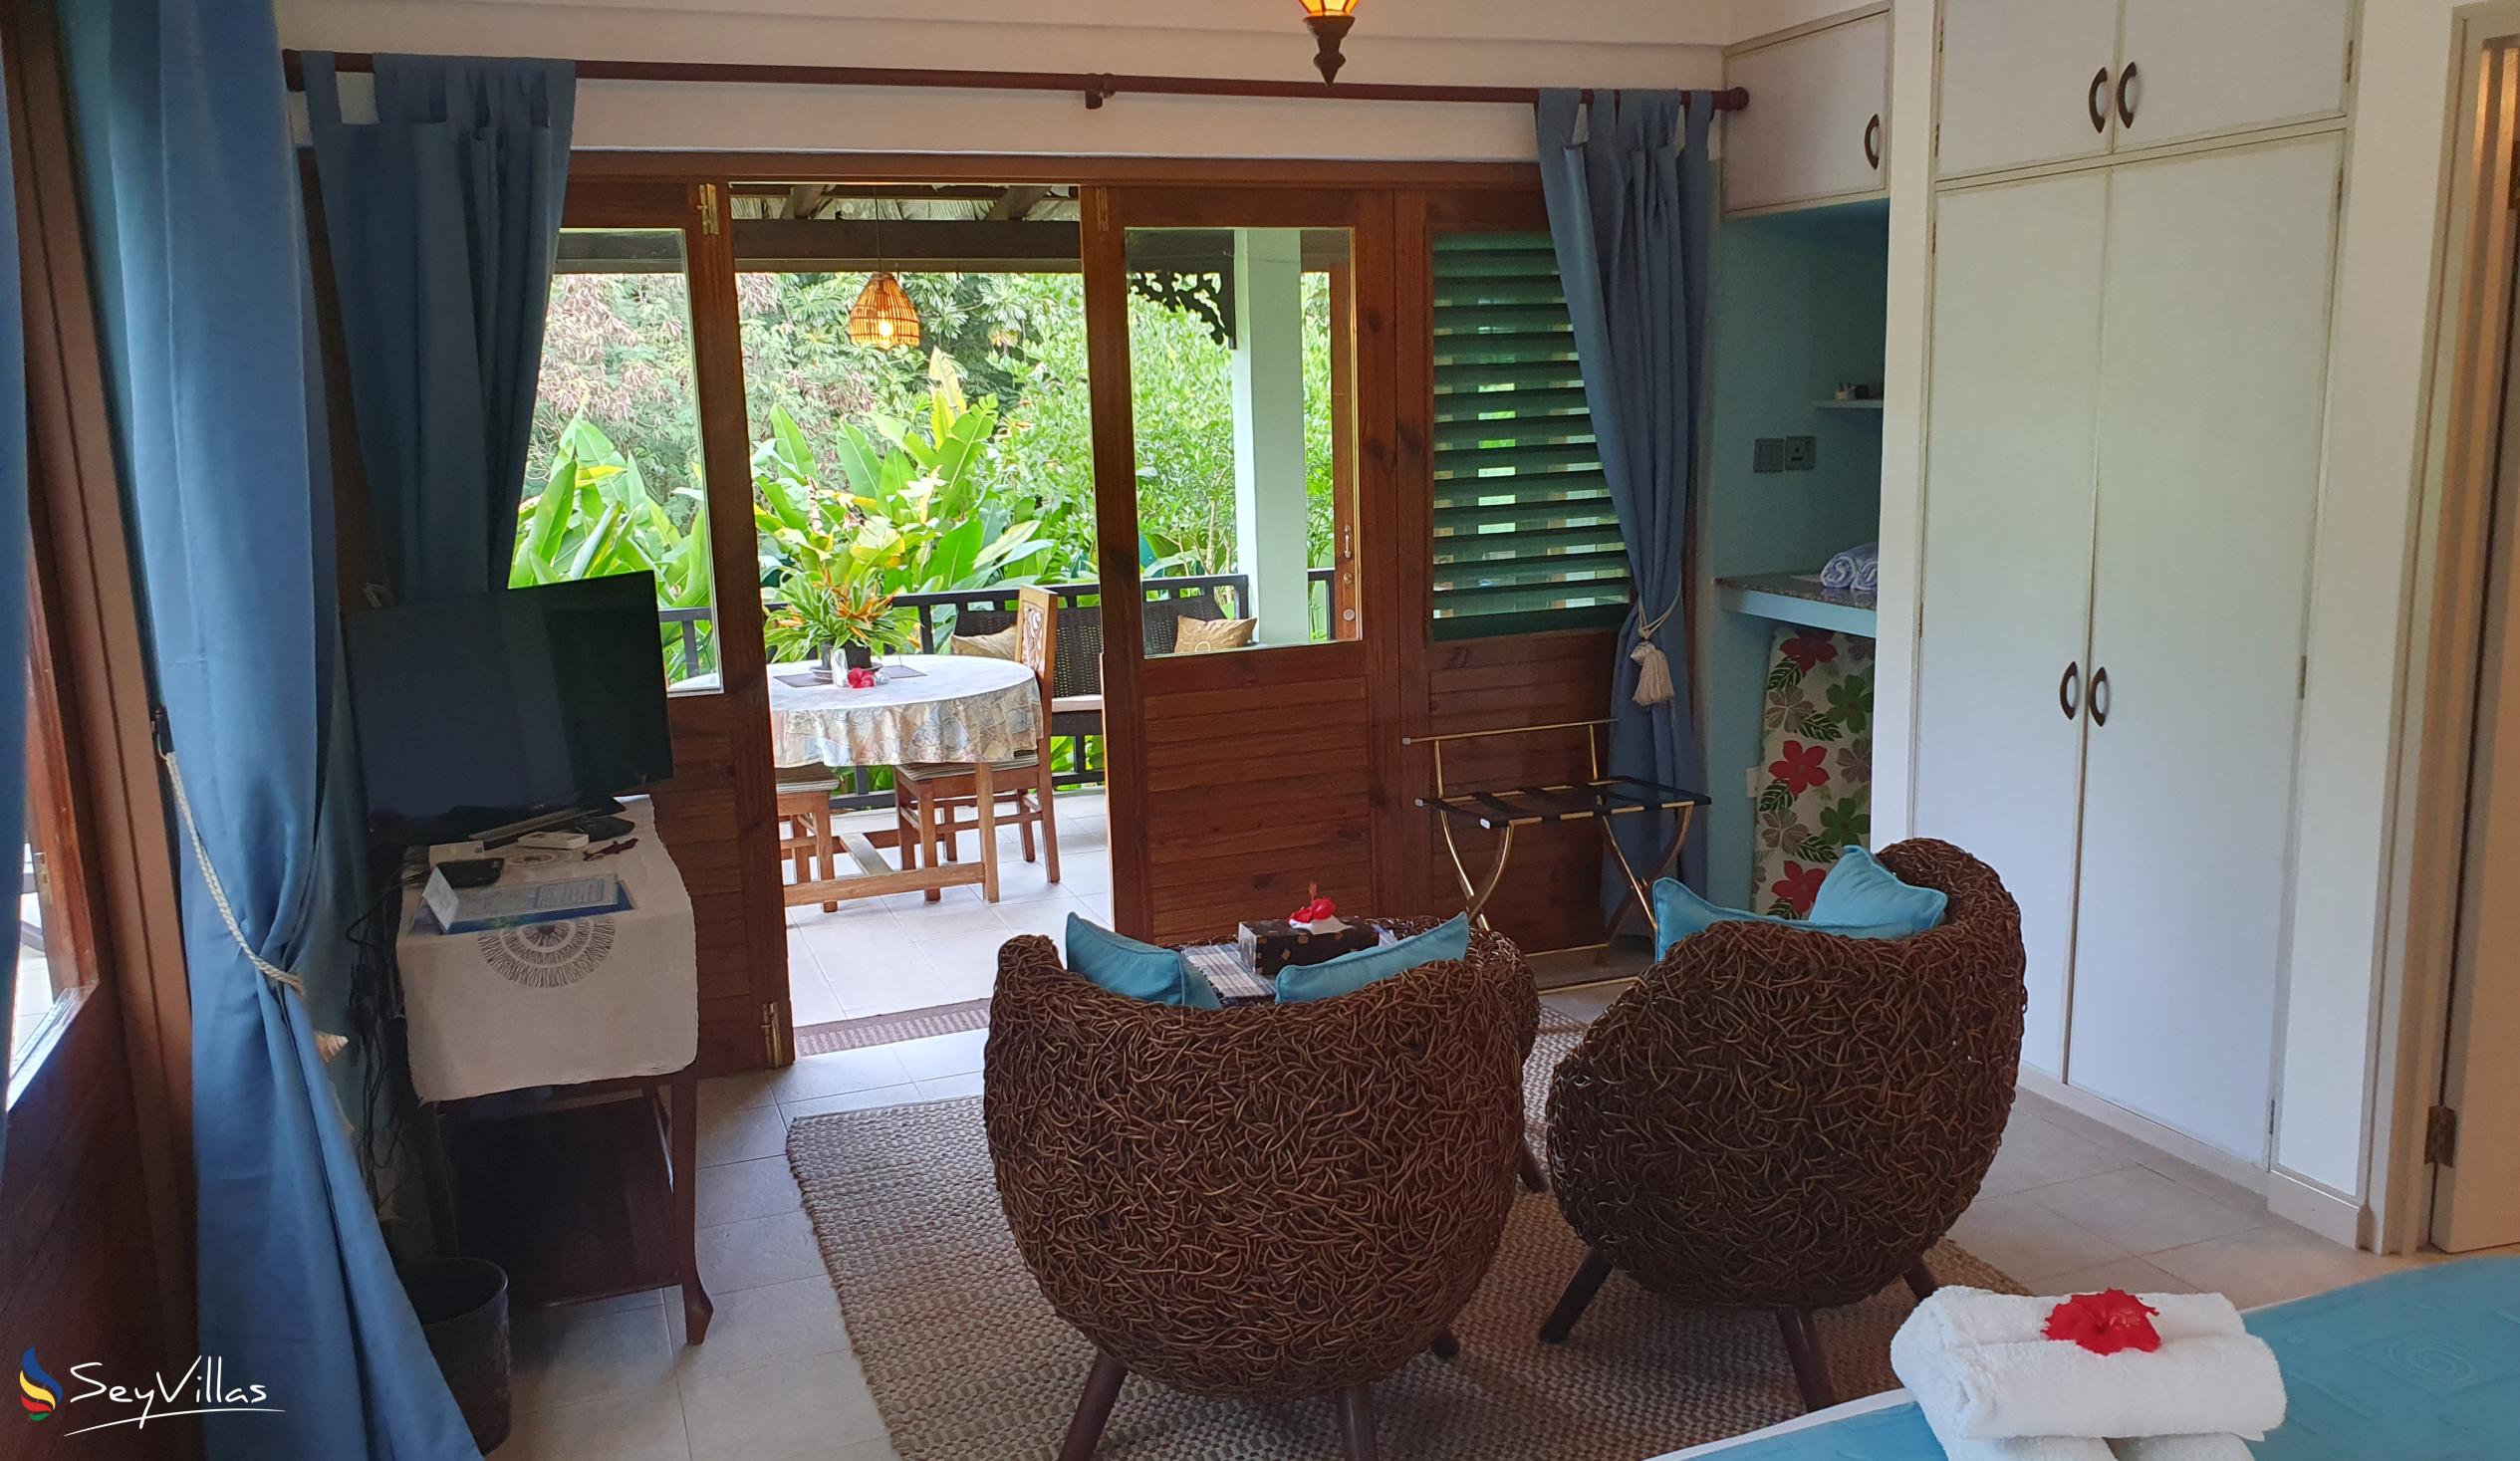 Photo 125: Maison Soleil - Jasmine Suite - Mahé (Seychelles)